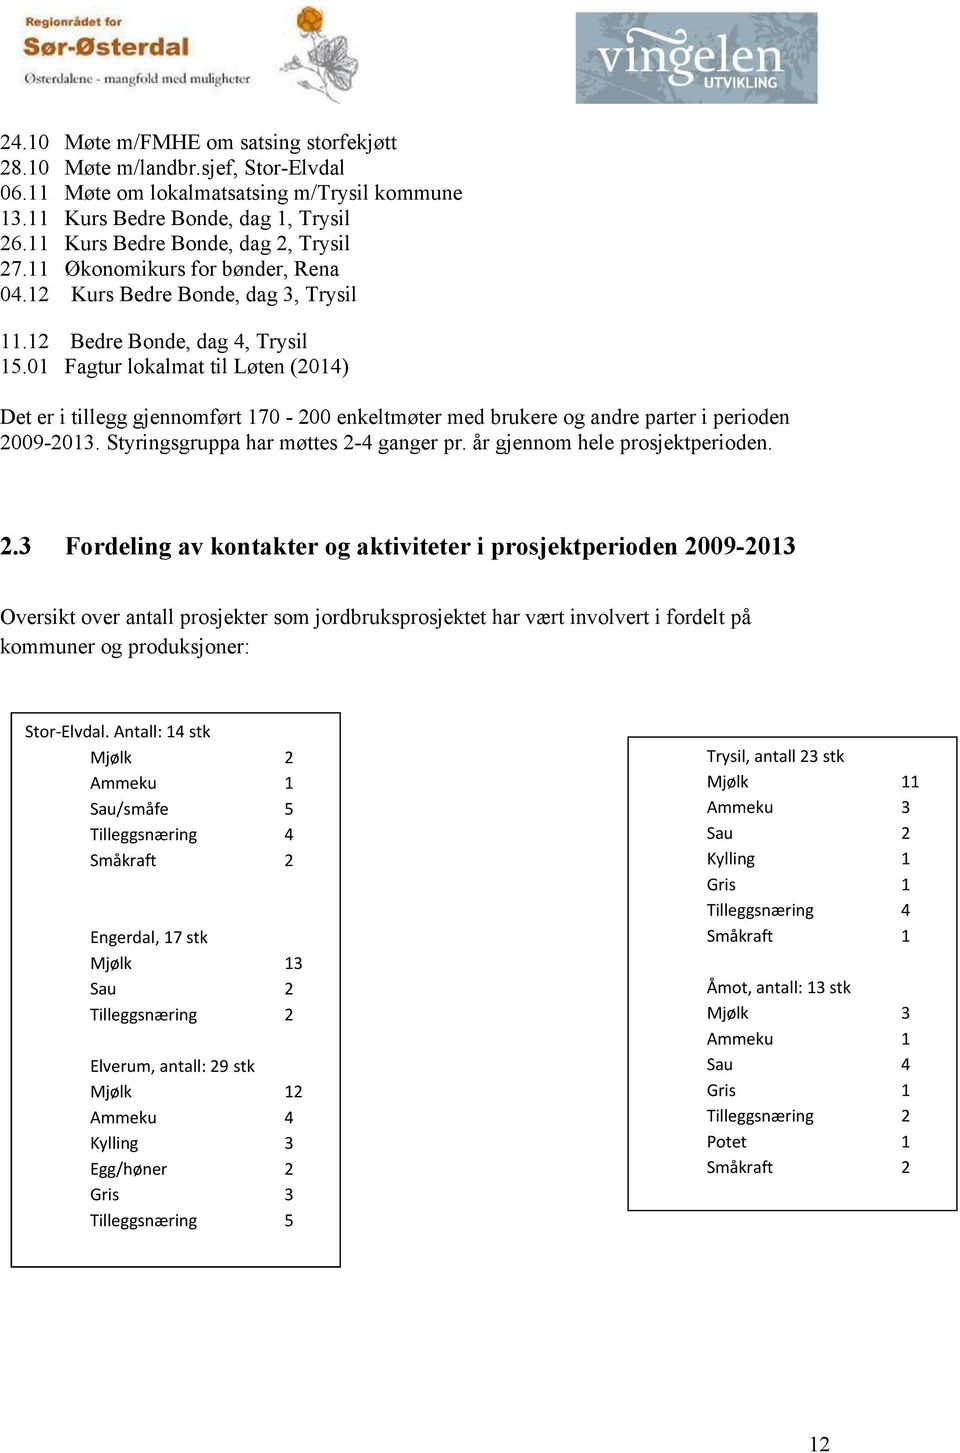 01 Fagtur lokalmat til Løten (2014) Det er i tillegg gjennomført 170-200 enkeltmøter med brukere og andre parter i perioden 2009-2013. Styringsgruppa har møttes 2-4 ganger pr.